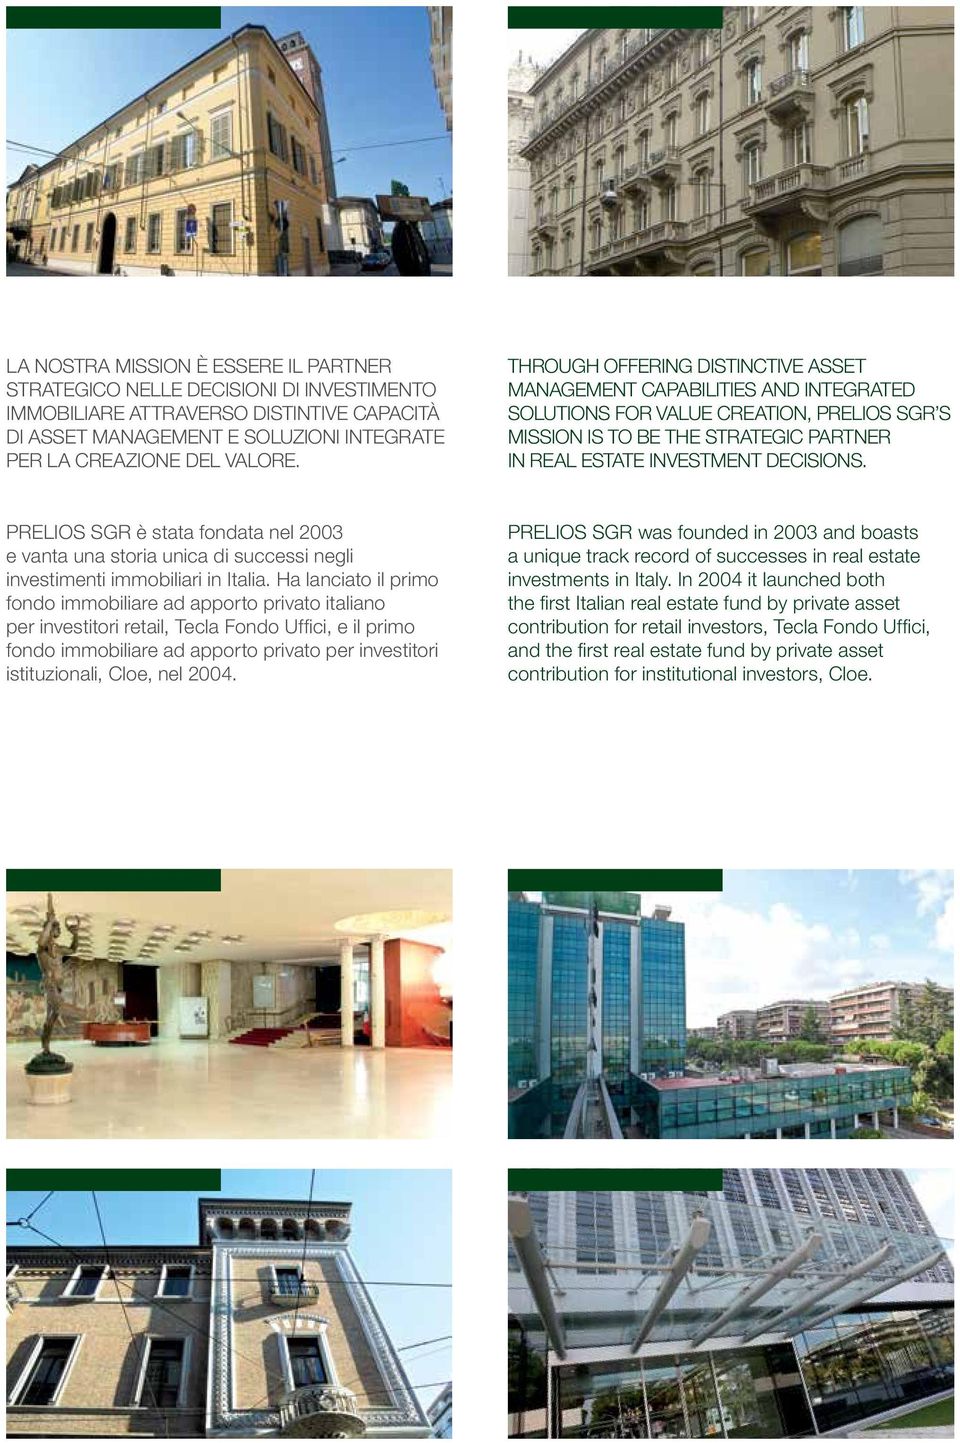 prelios sgr è stata fondata nel 2003 e vanta una storia unica di successi negli investimenti immobiliari in Italia.